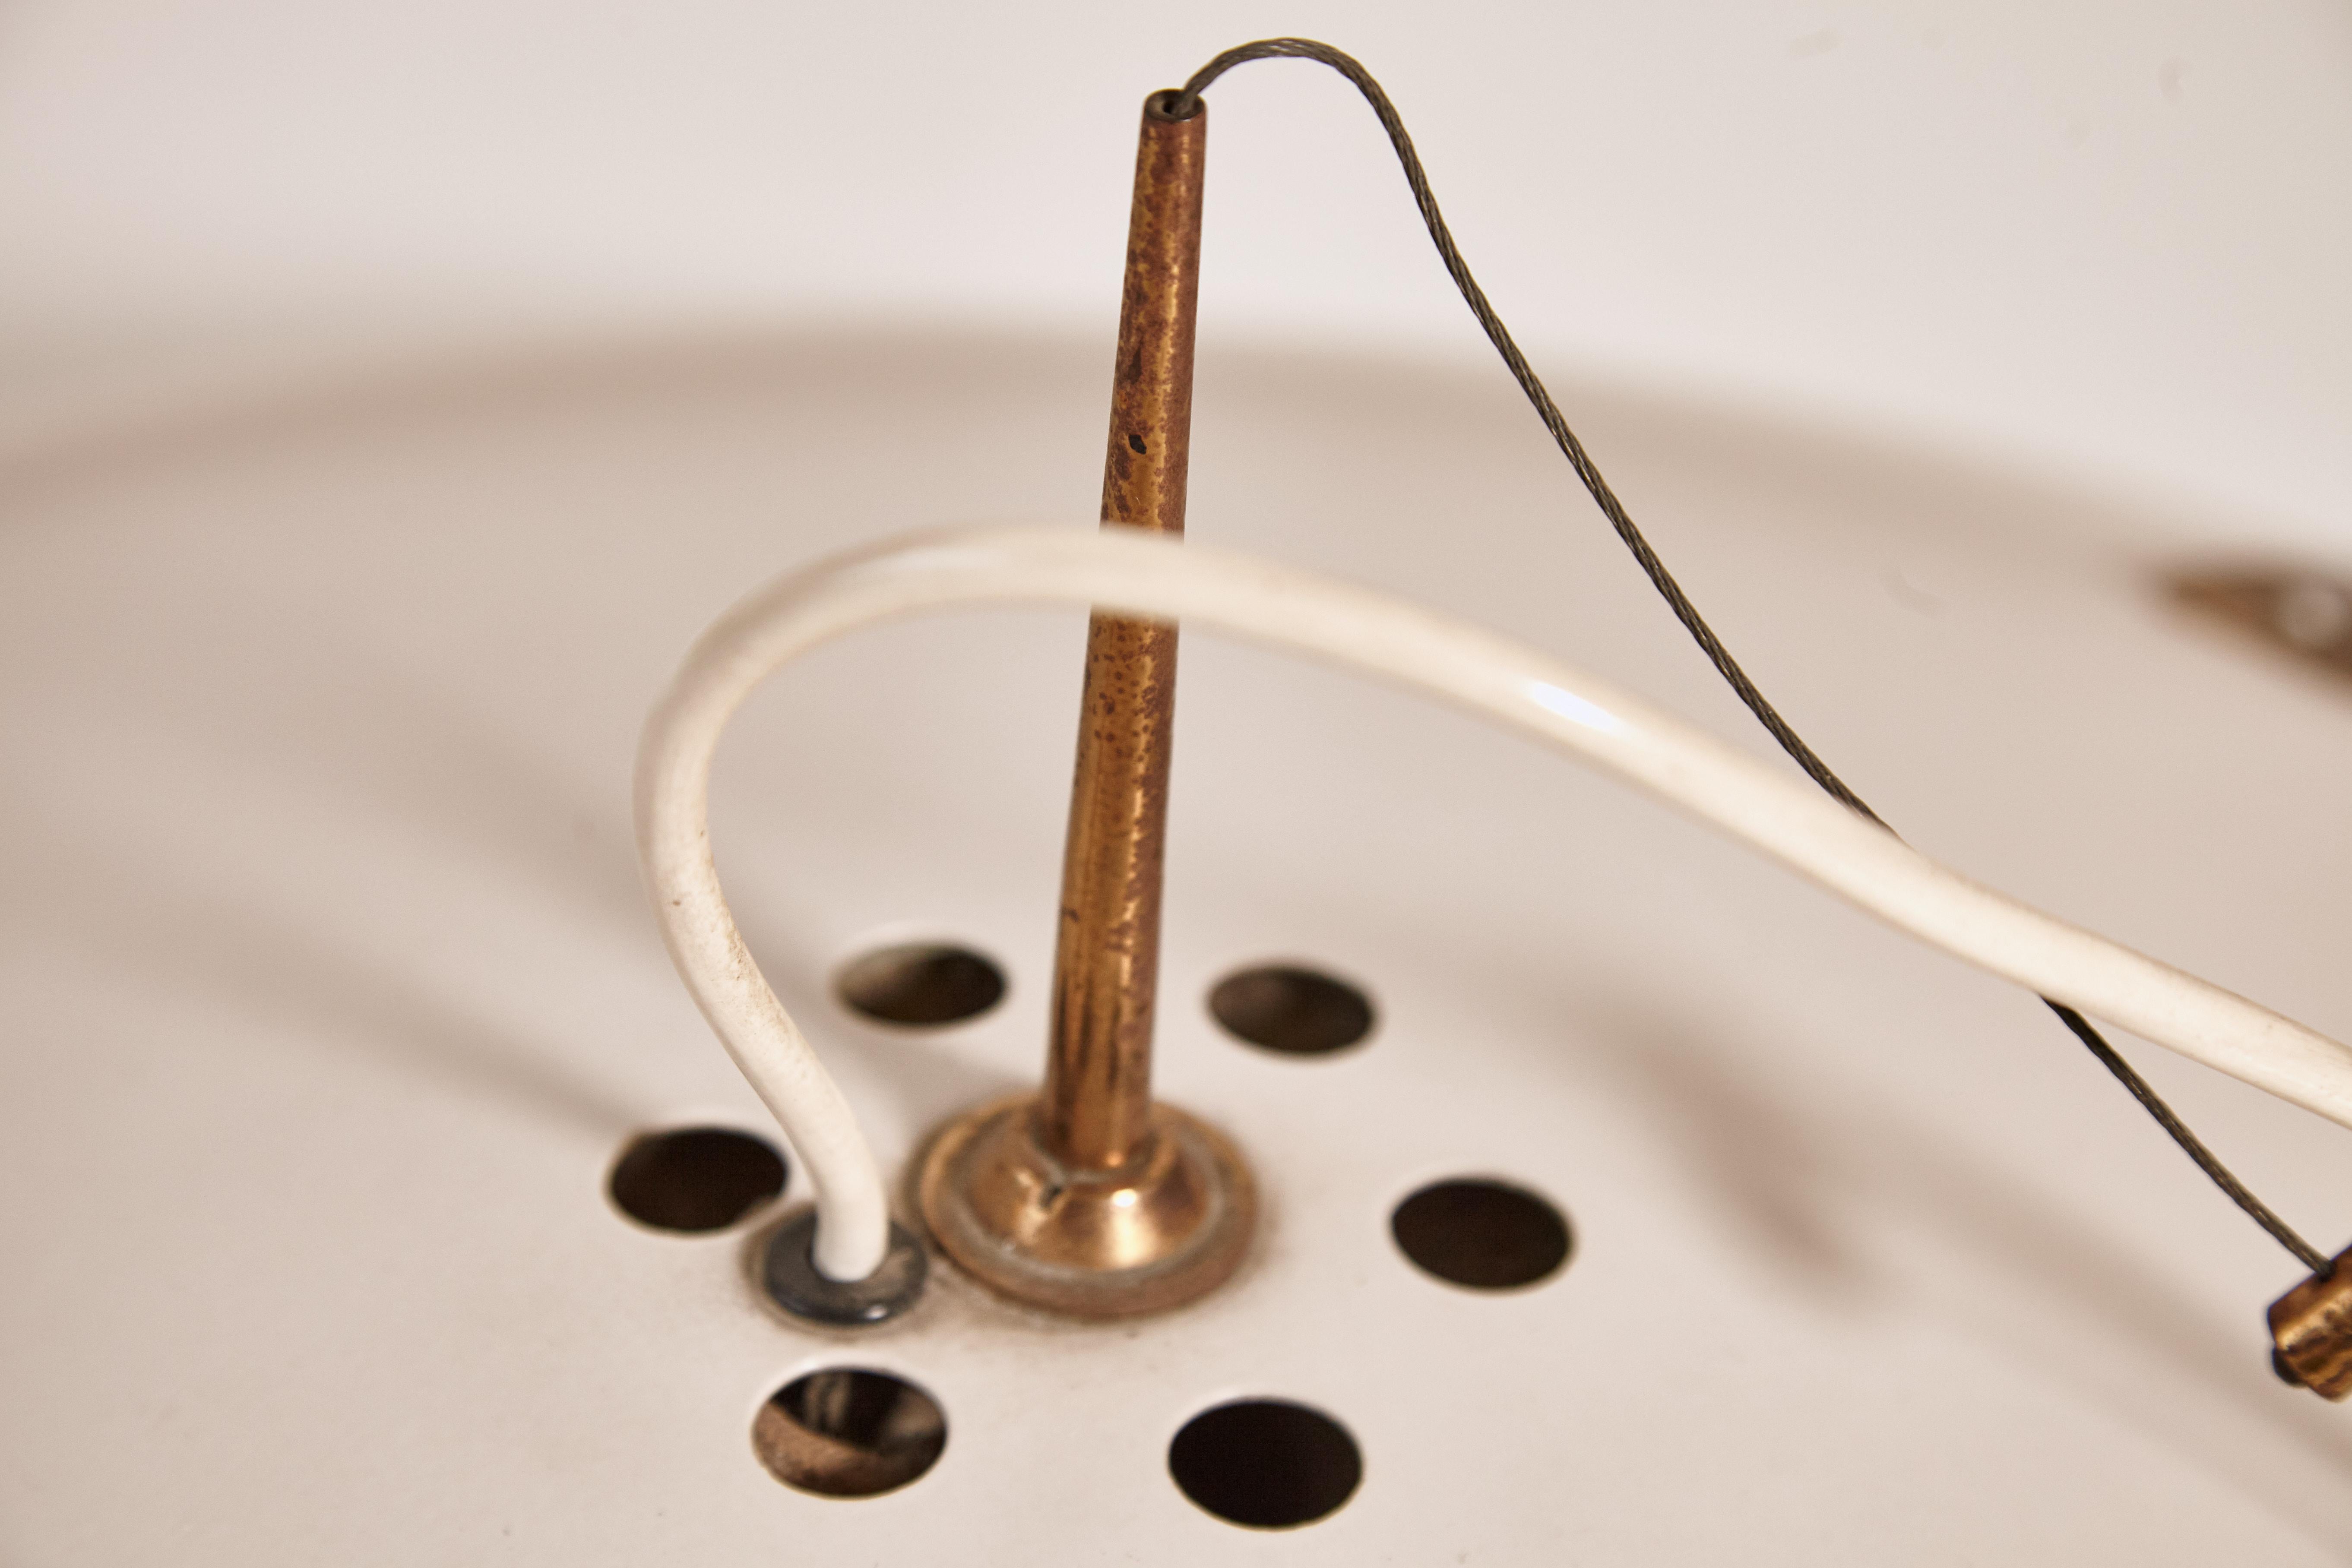 Seltene Deckenlampe / Kronleuchter Modell 1140, hergestellt von Stilnovo, Mailand, Italien, 1960er Jahre. Säuregeätztes Glas, lackiertes Aluminium und Messing. Guter Originalzustand mit Altersspuren und Patina an den Messingteilen, insbesondere an